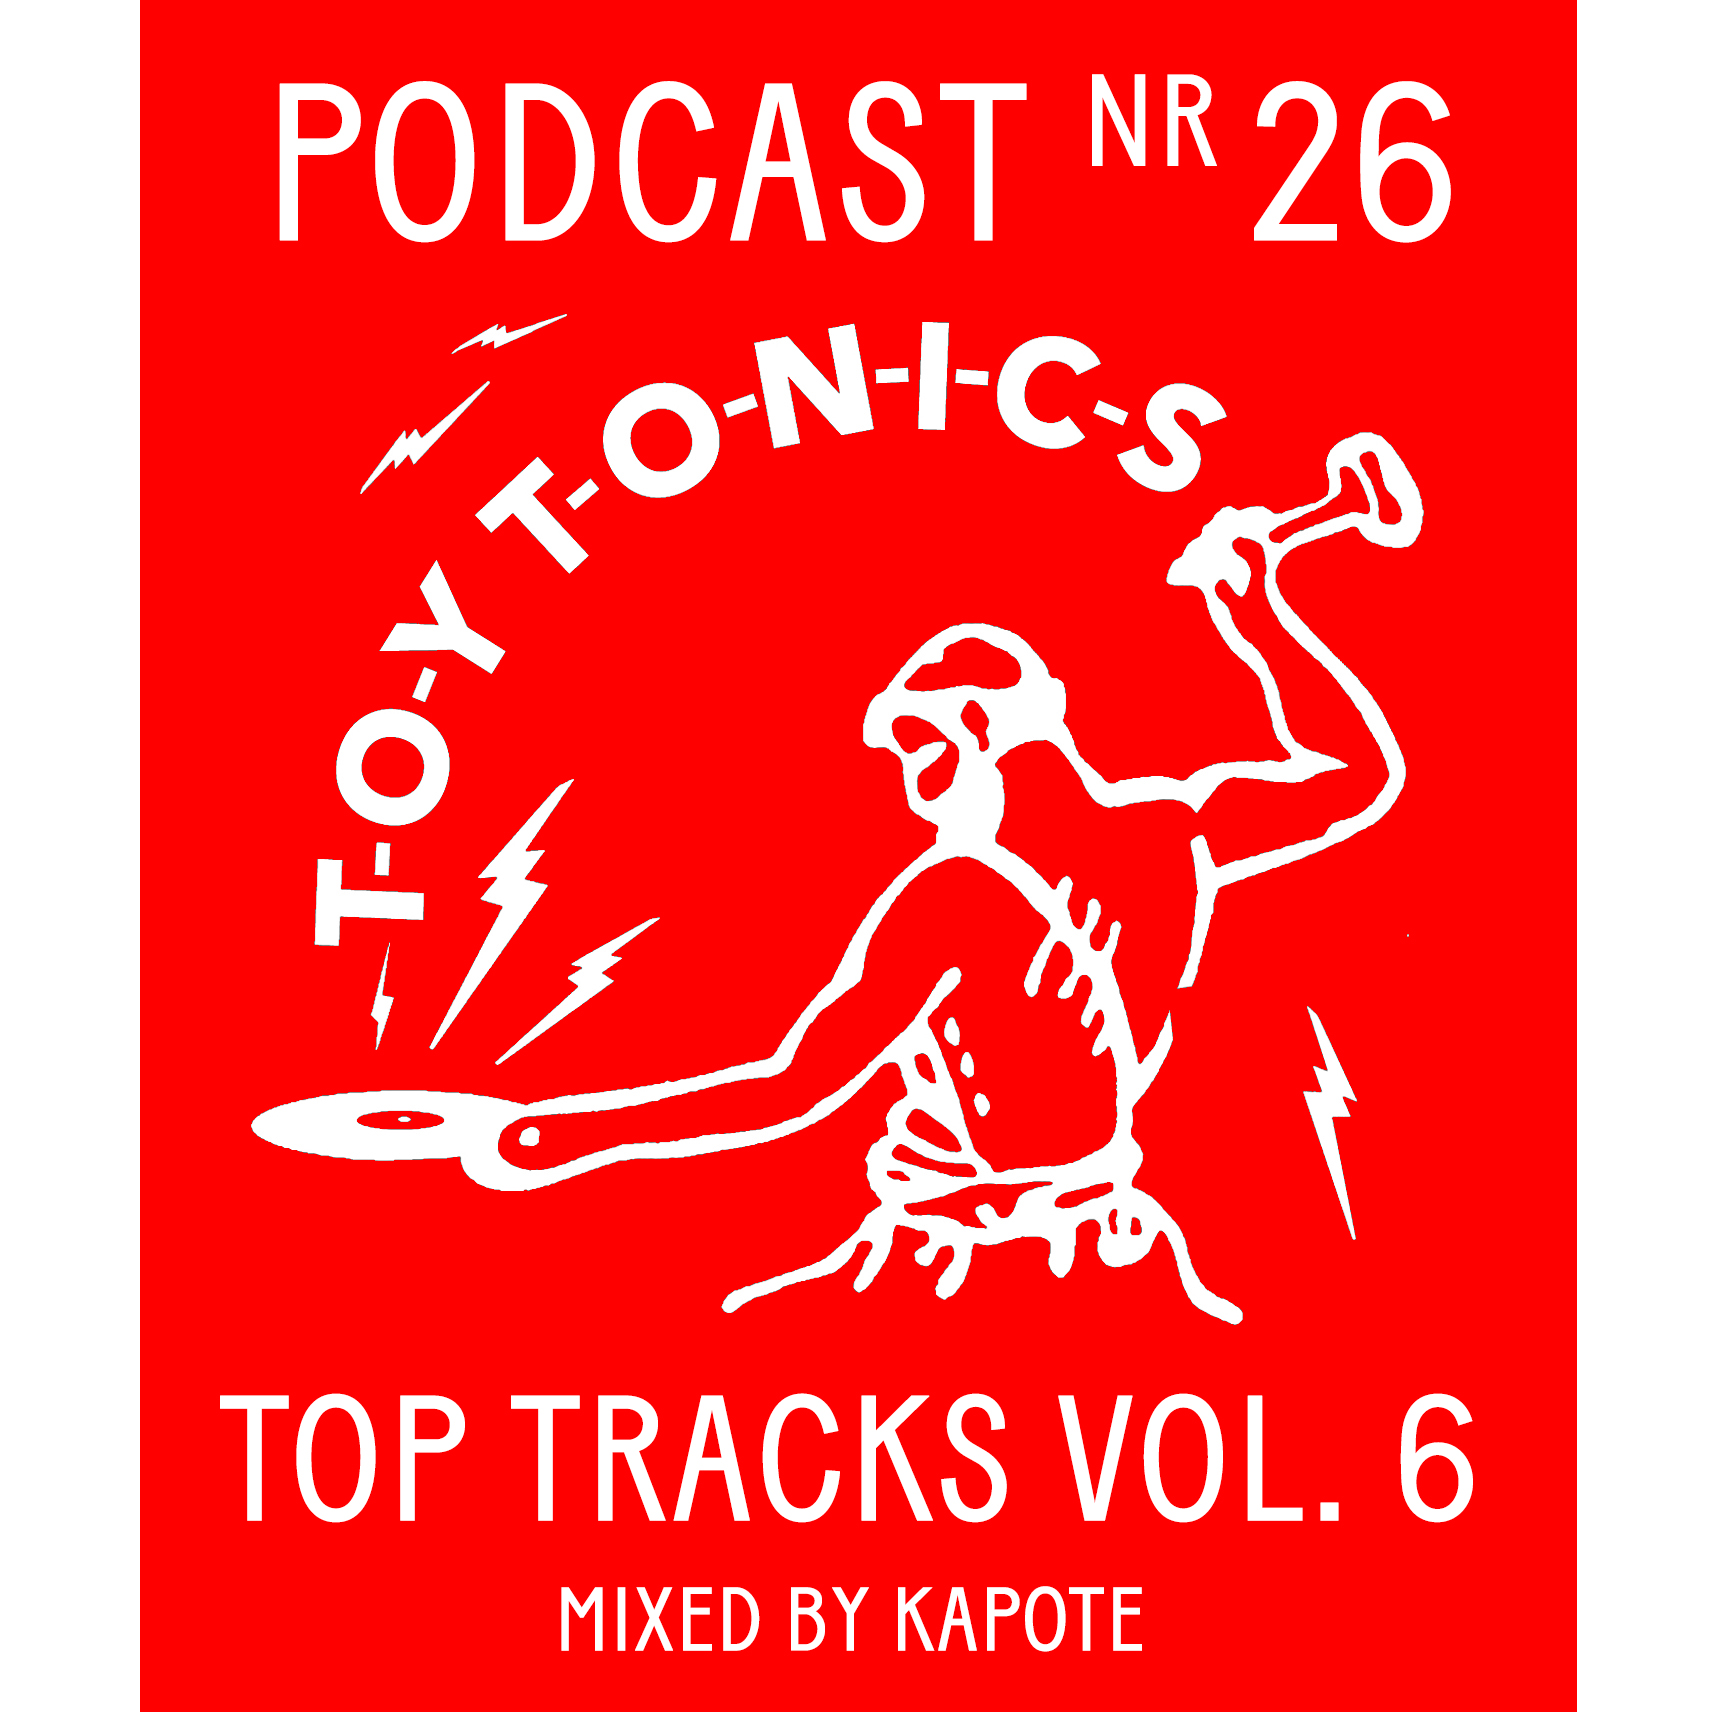 PODCAST NR 26 - Top Tracks Vol. 6 Continuous Mix